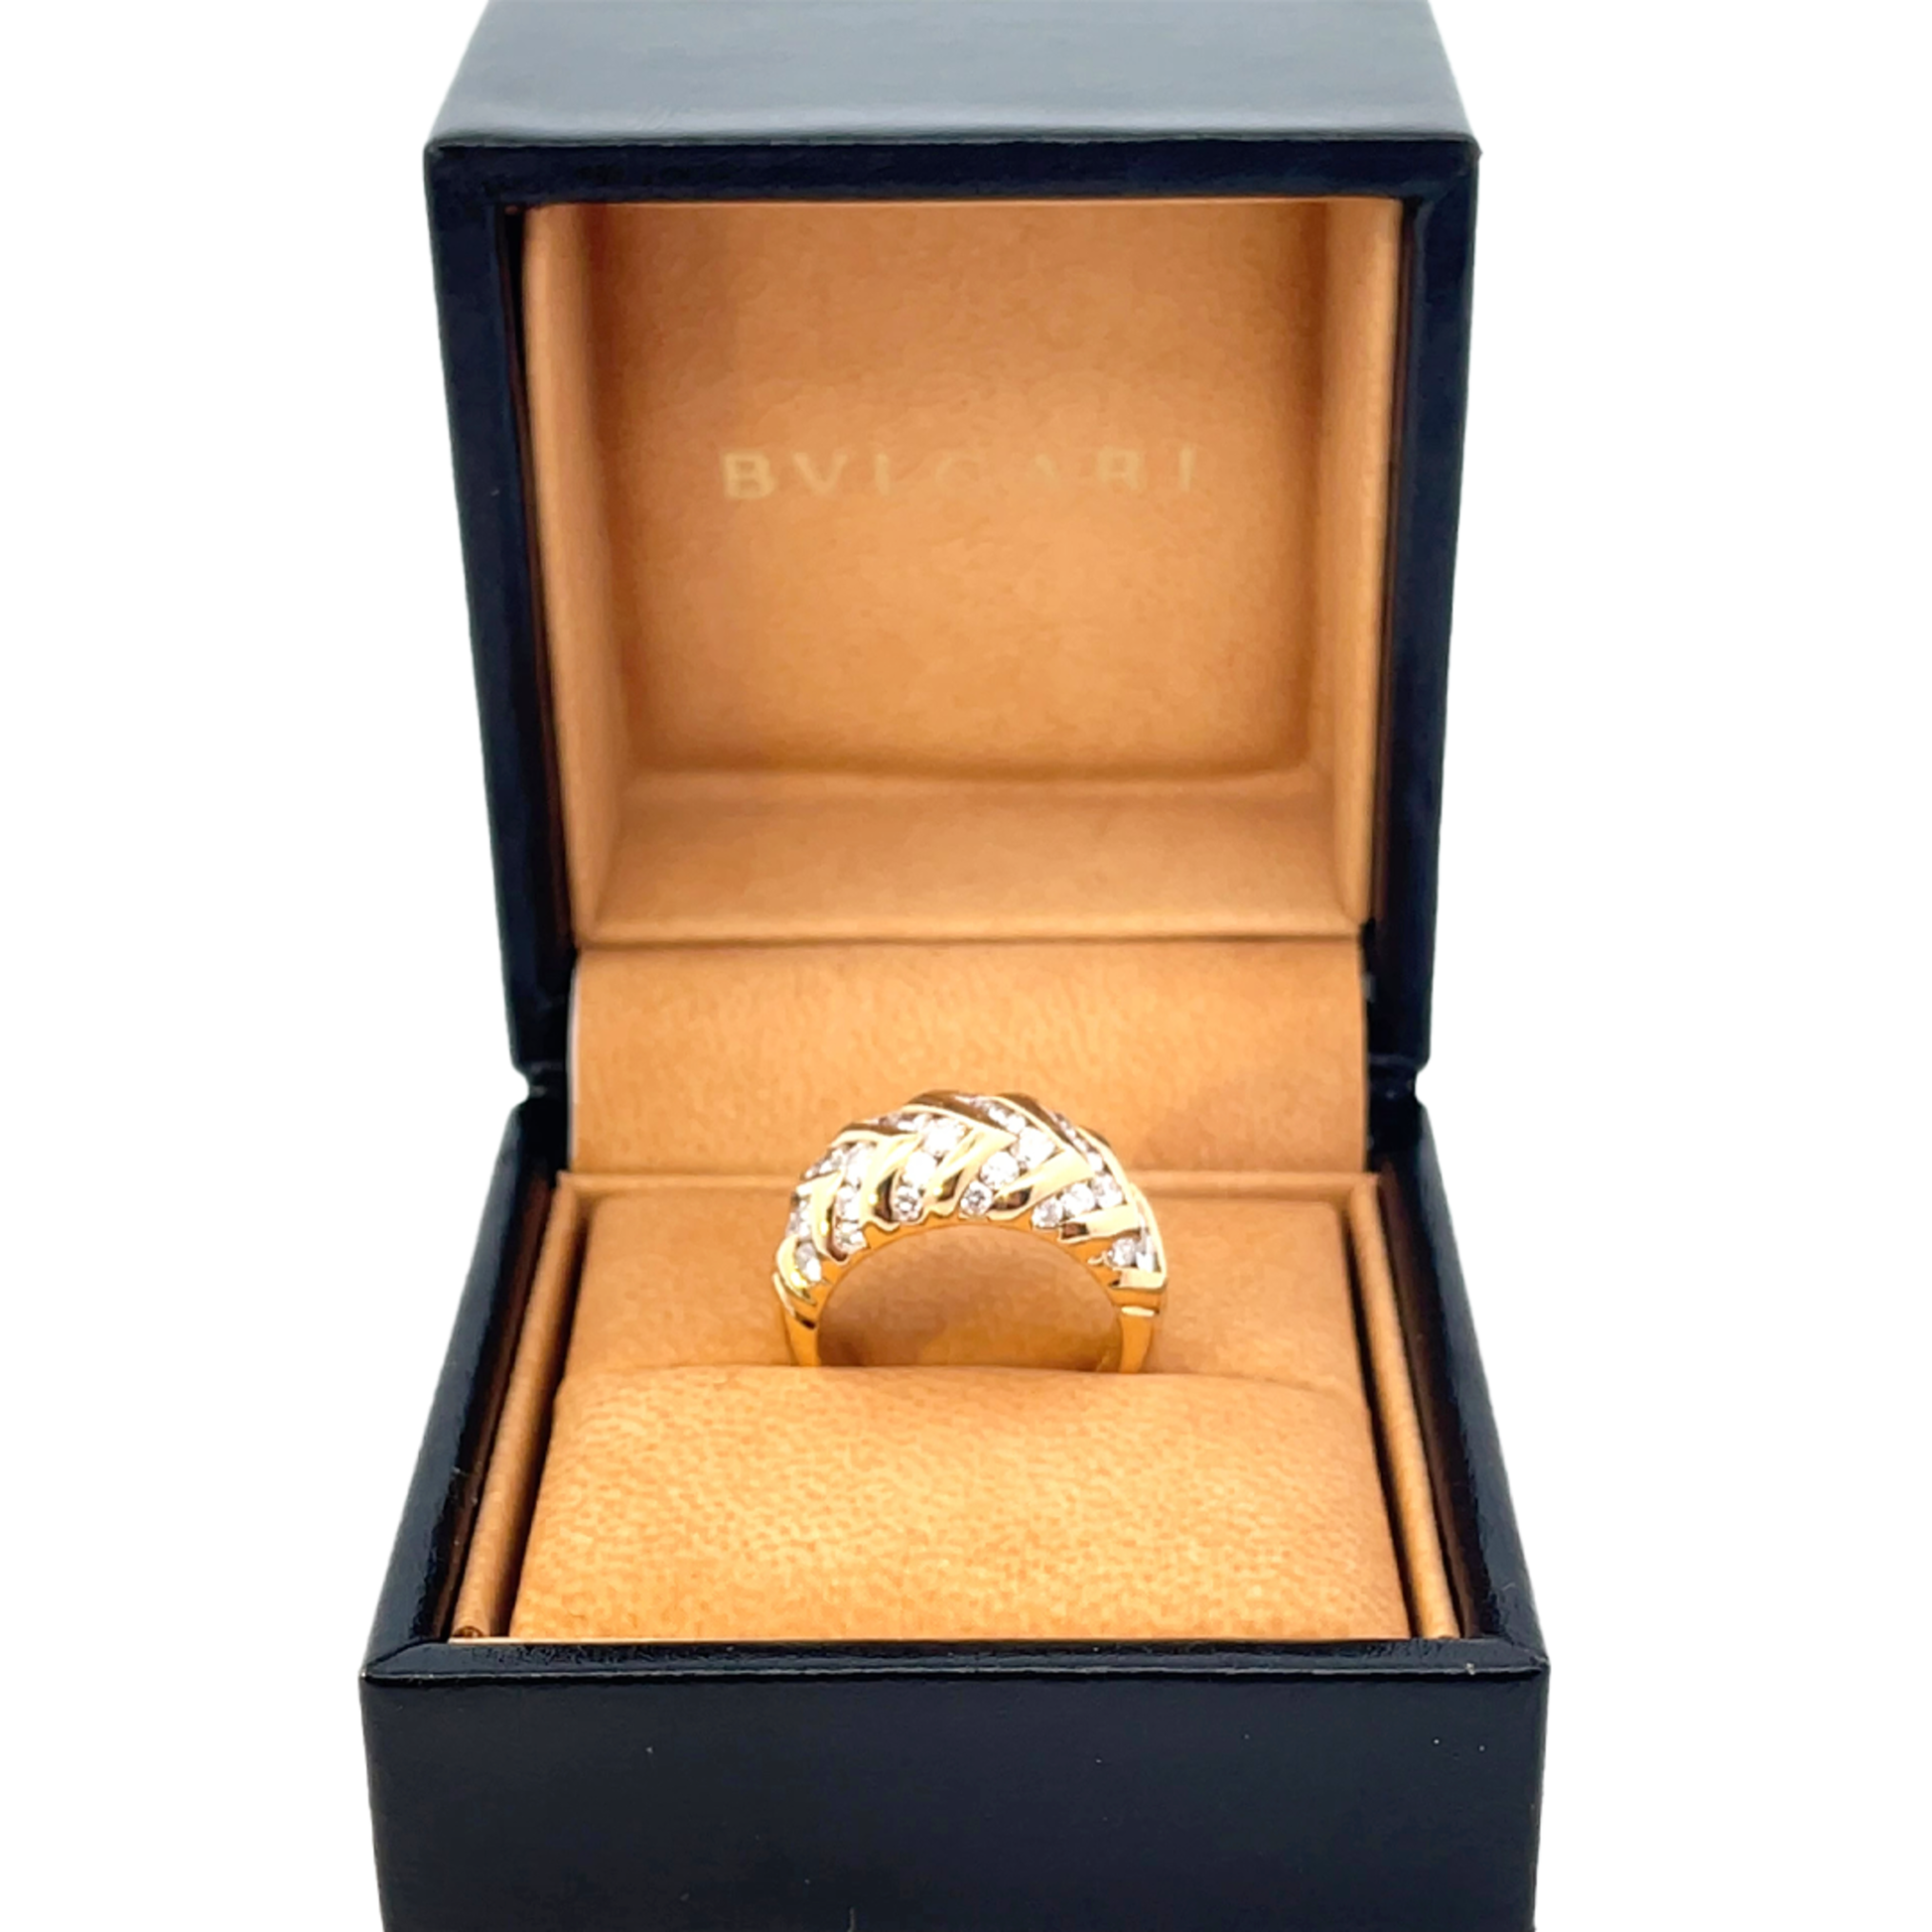 Bulgari 1980s 18KT Yellow Gold Diamond Spiga Ring in original box